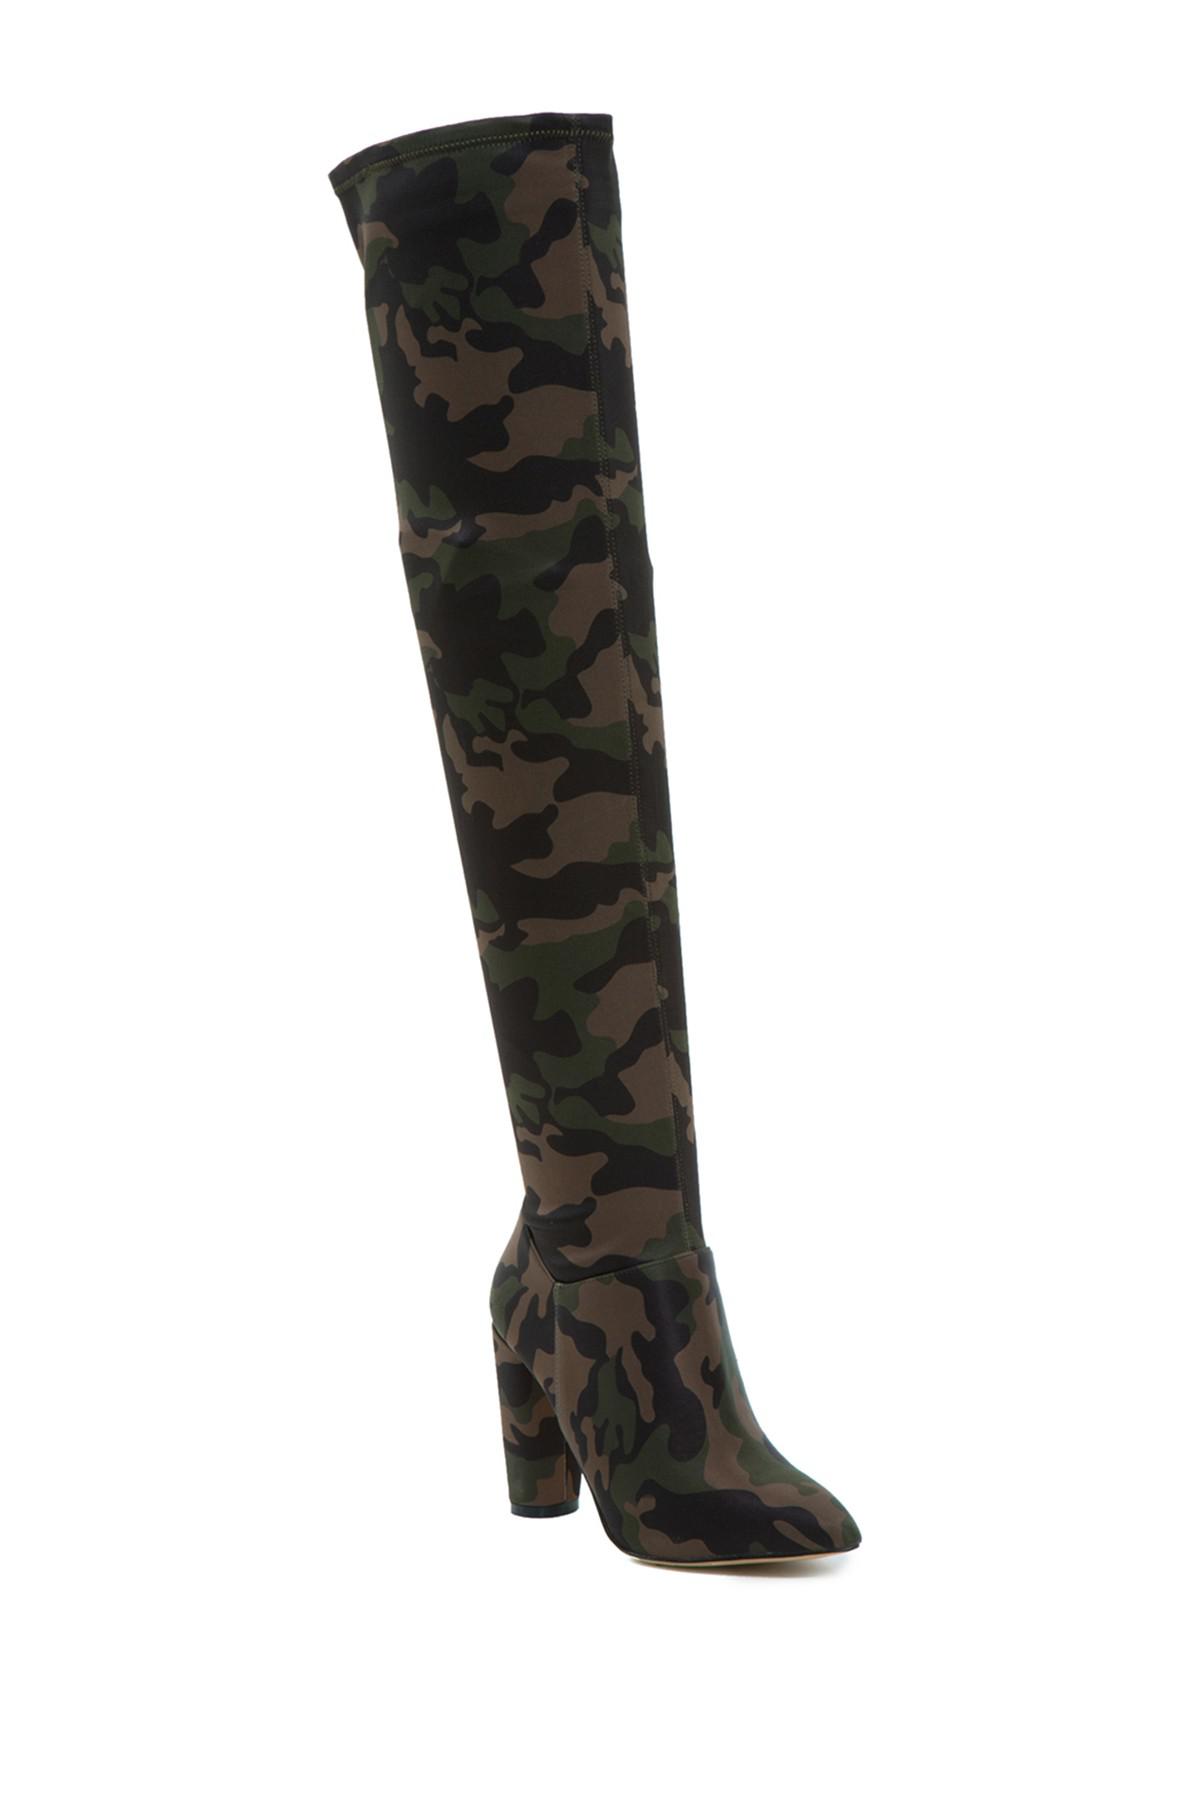 ALDO Fadoven Thigh-high Camo Boot in Black | Lyst